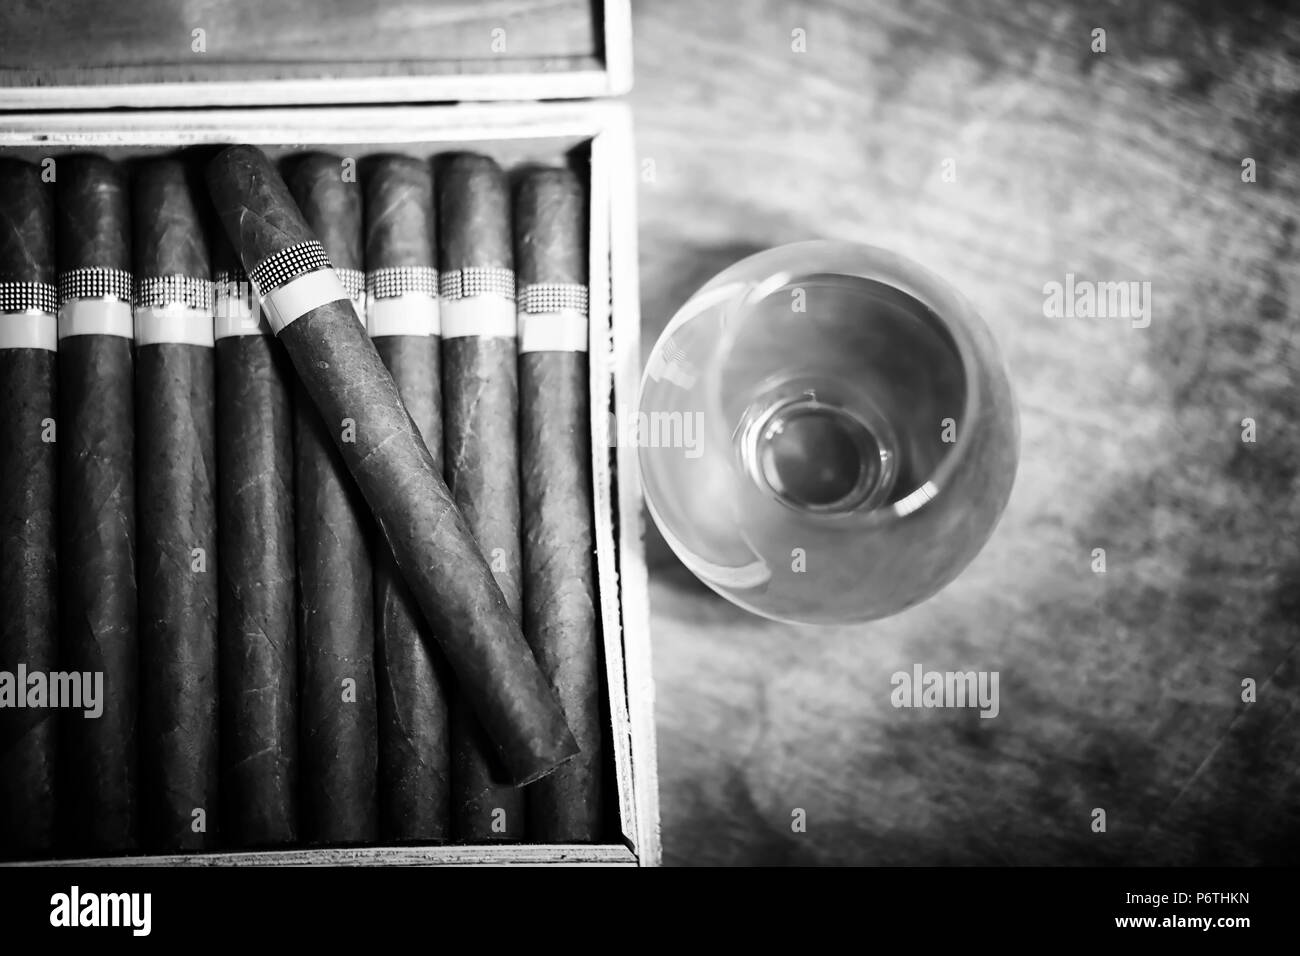 Im Retrostil Foto von großen Feld der kubanischen Zigarren auf einen hölzernen Tisch in ein vorzeigbares Paket Stockfoto